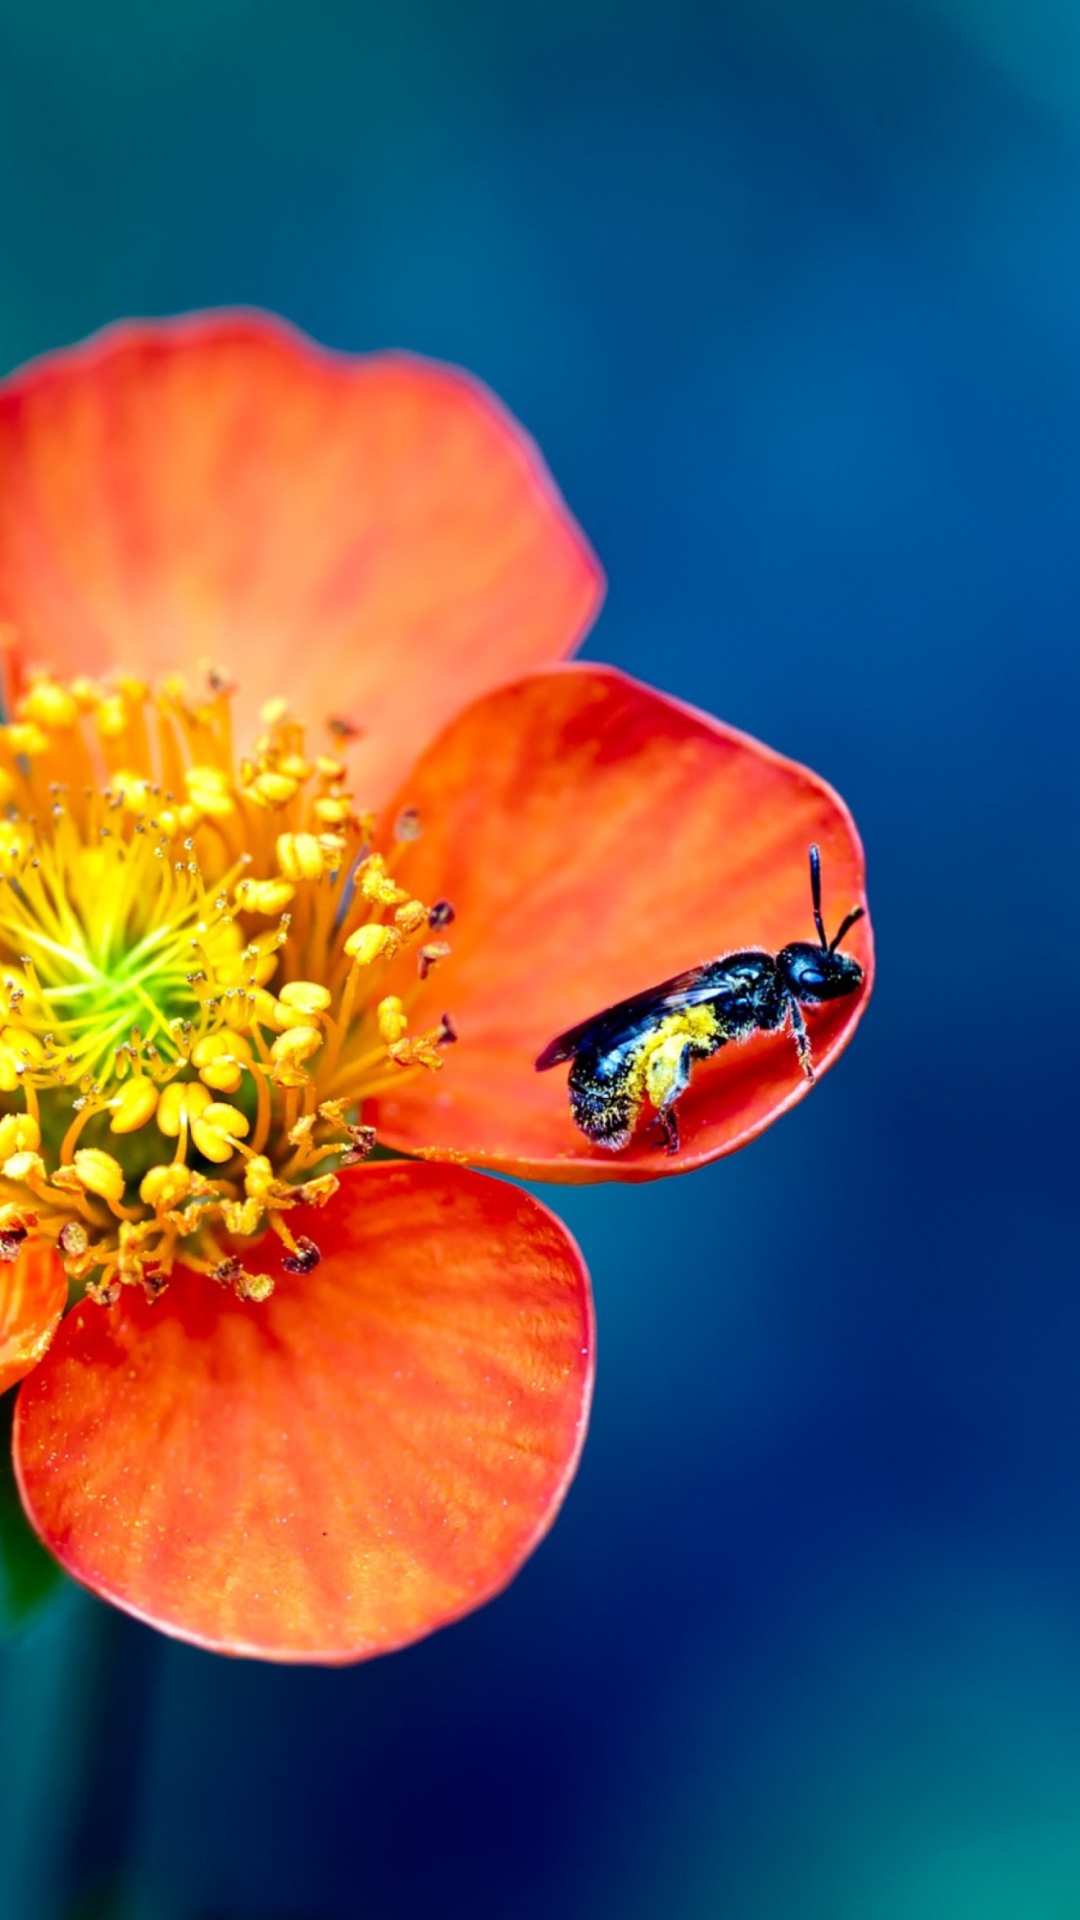 Bee On Orange Flower wallpaper 1080x1920